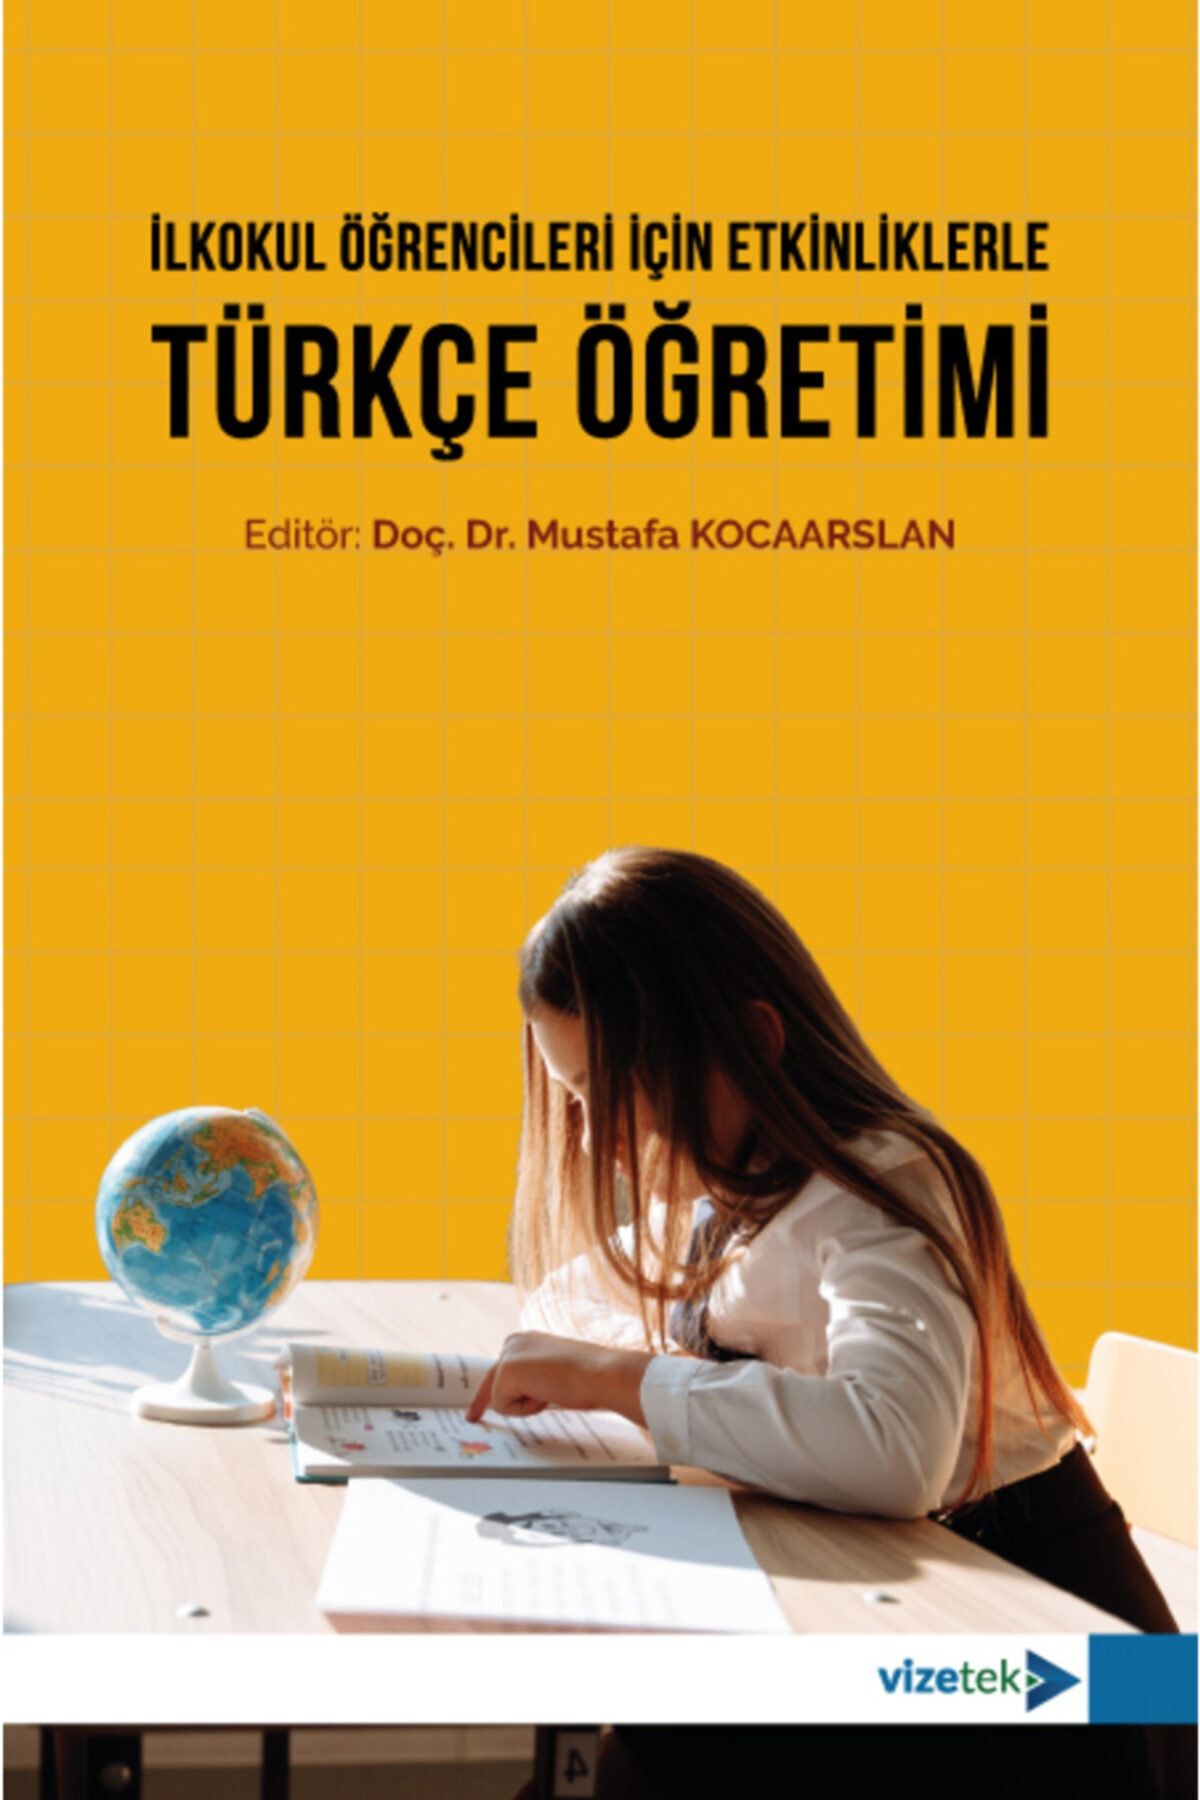 Vizetek Yayıncılık Ilkokul Öğrencileri Için Etkinliklerle Türkçe Öğretimi - Mustafa Kocaarslan -